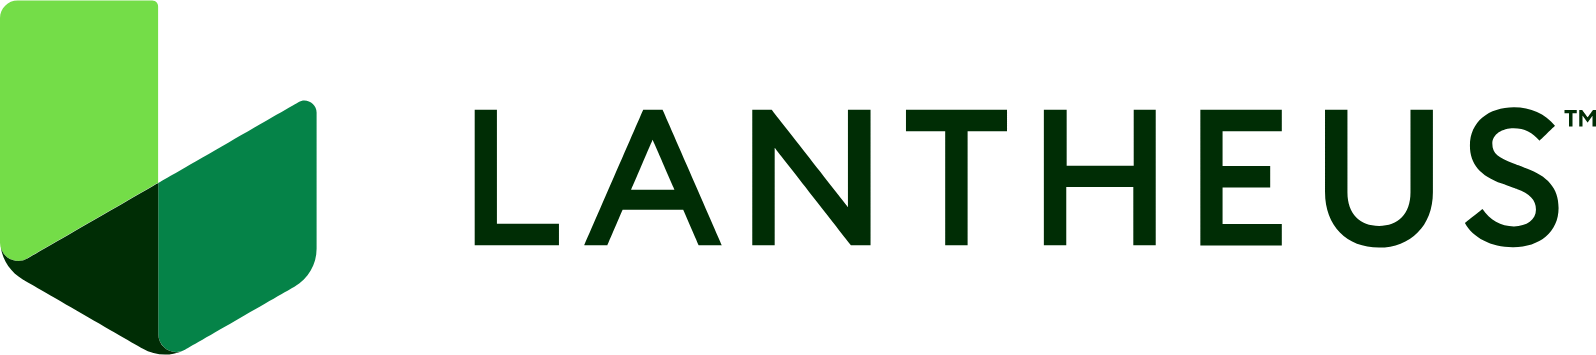 Lantheus Holdings logo large (transparent PNG)